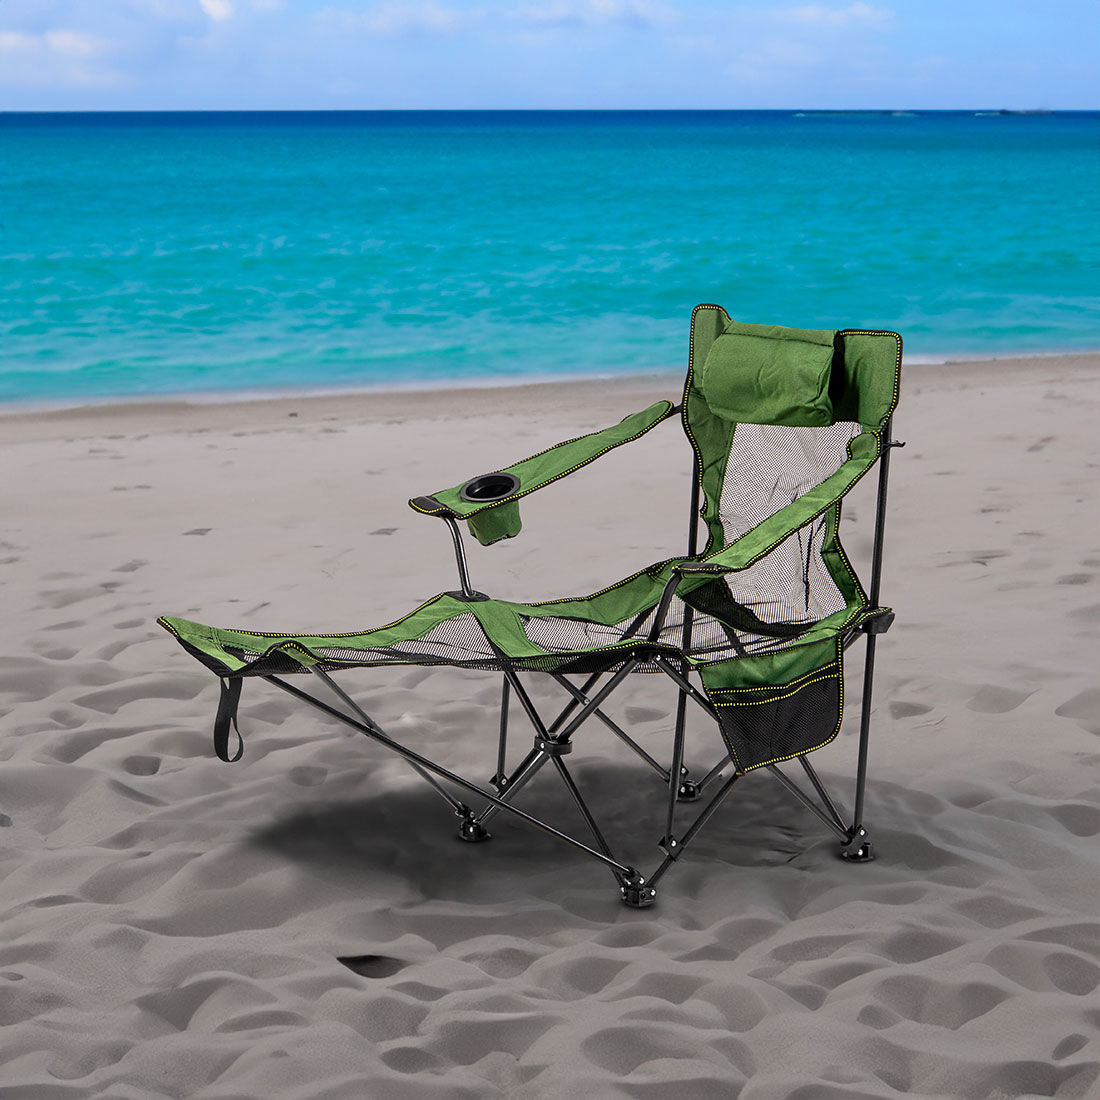 Pequeño Mundo - ¡Las sillas plegables son una excelente opción para ahorrar  espacio cuando viajas a la playa!